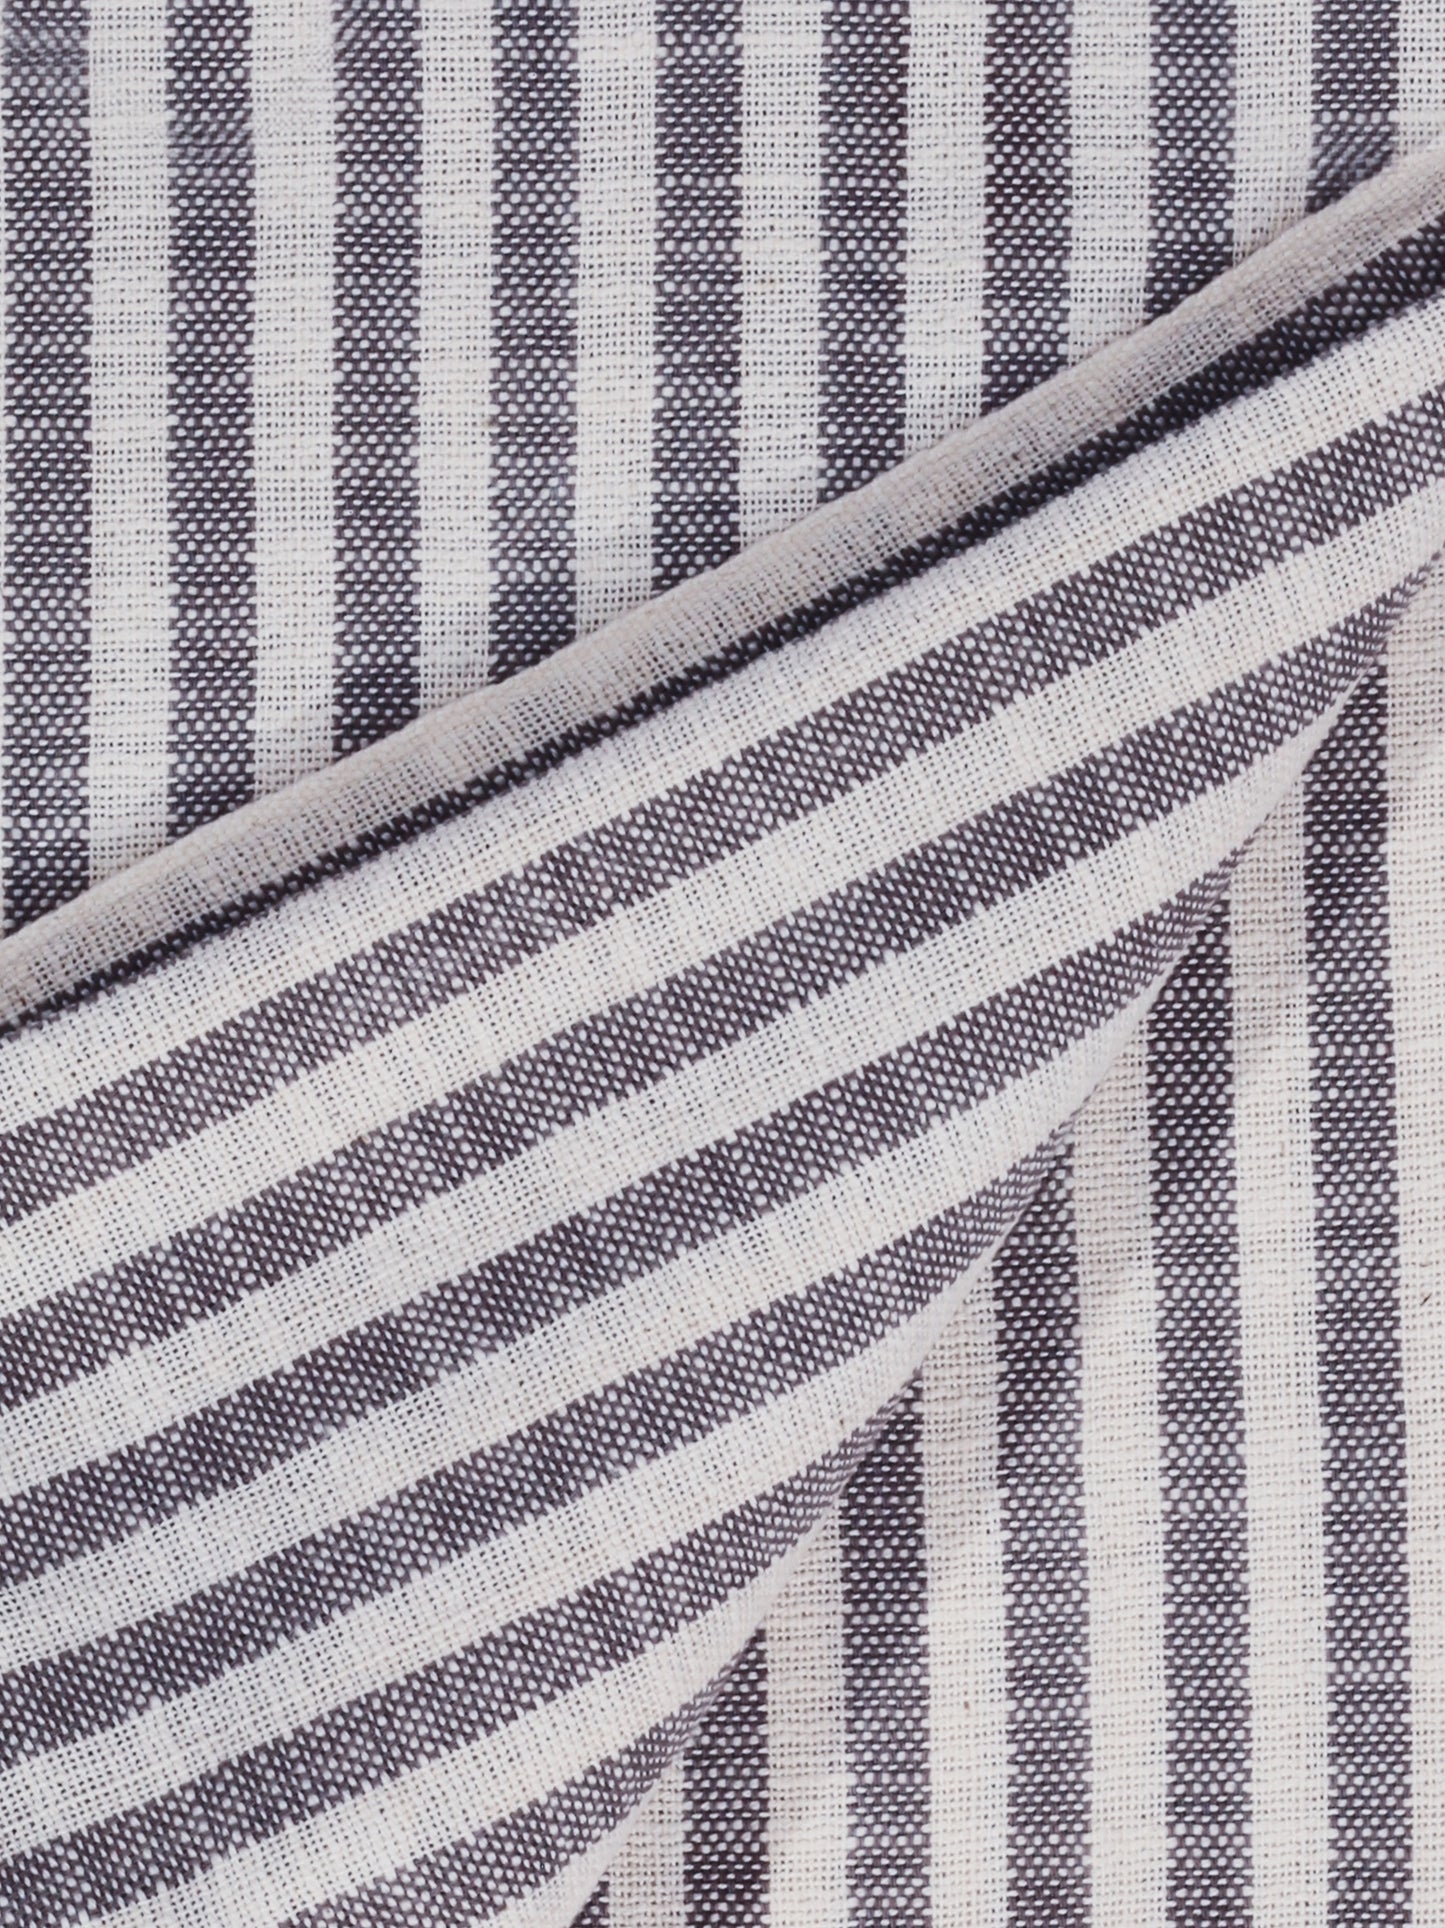 Federa Striped Grey